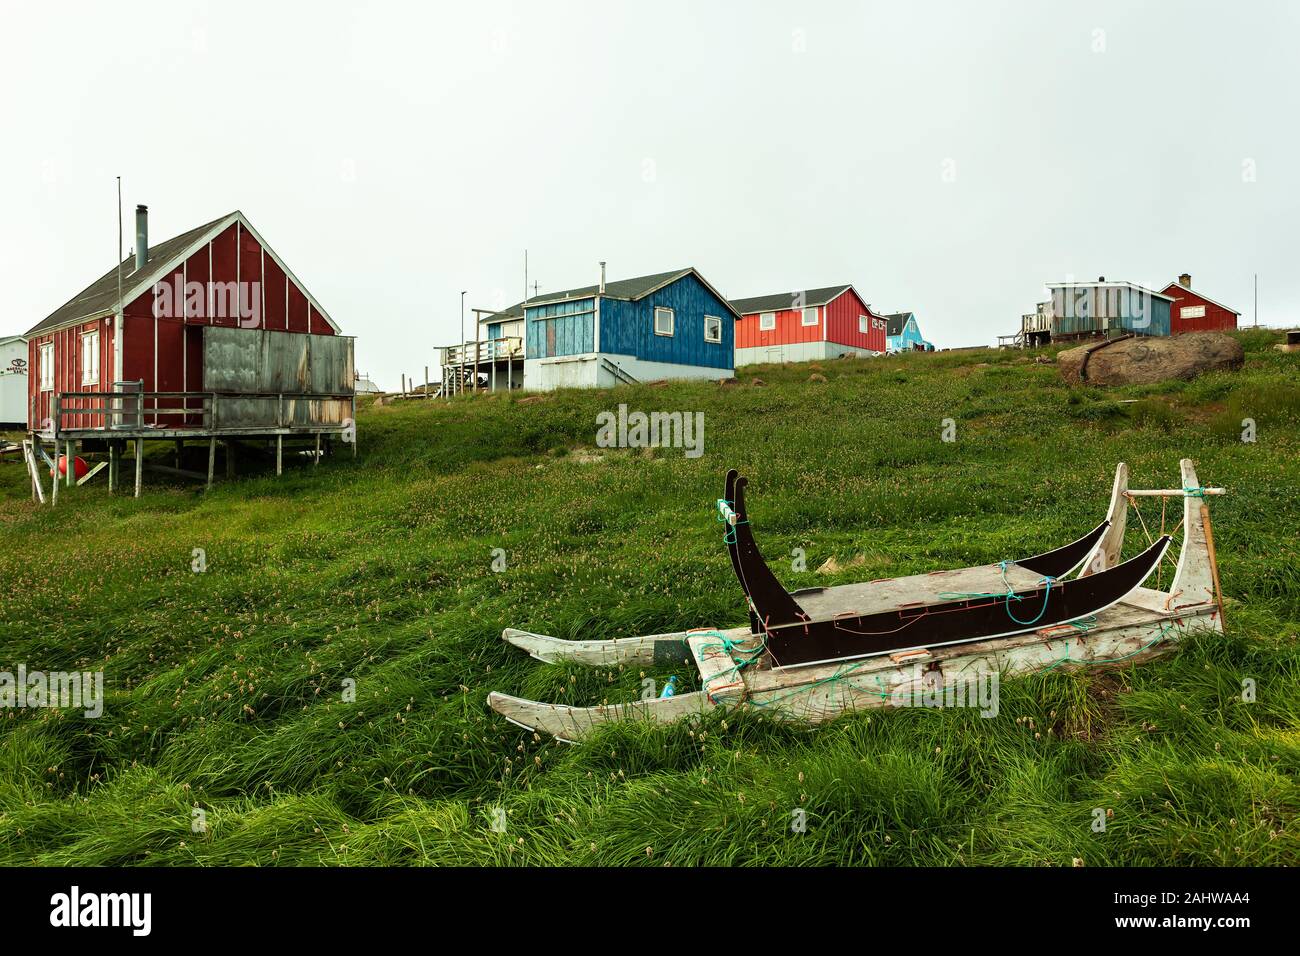 Alten hölzernen Schlitten vor der traditionellen Häusern - Upernavik, Grönland Stockfoto